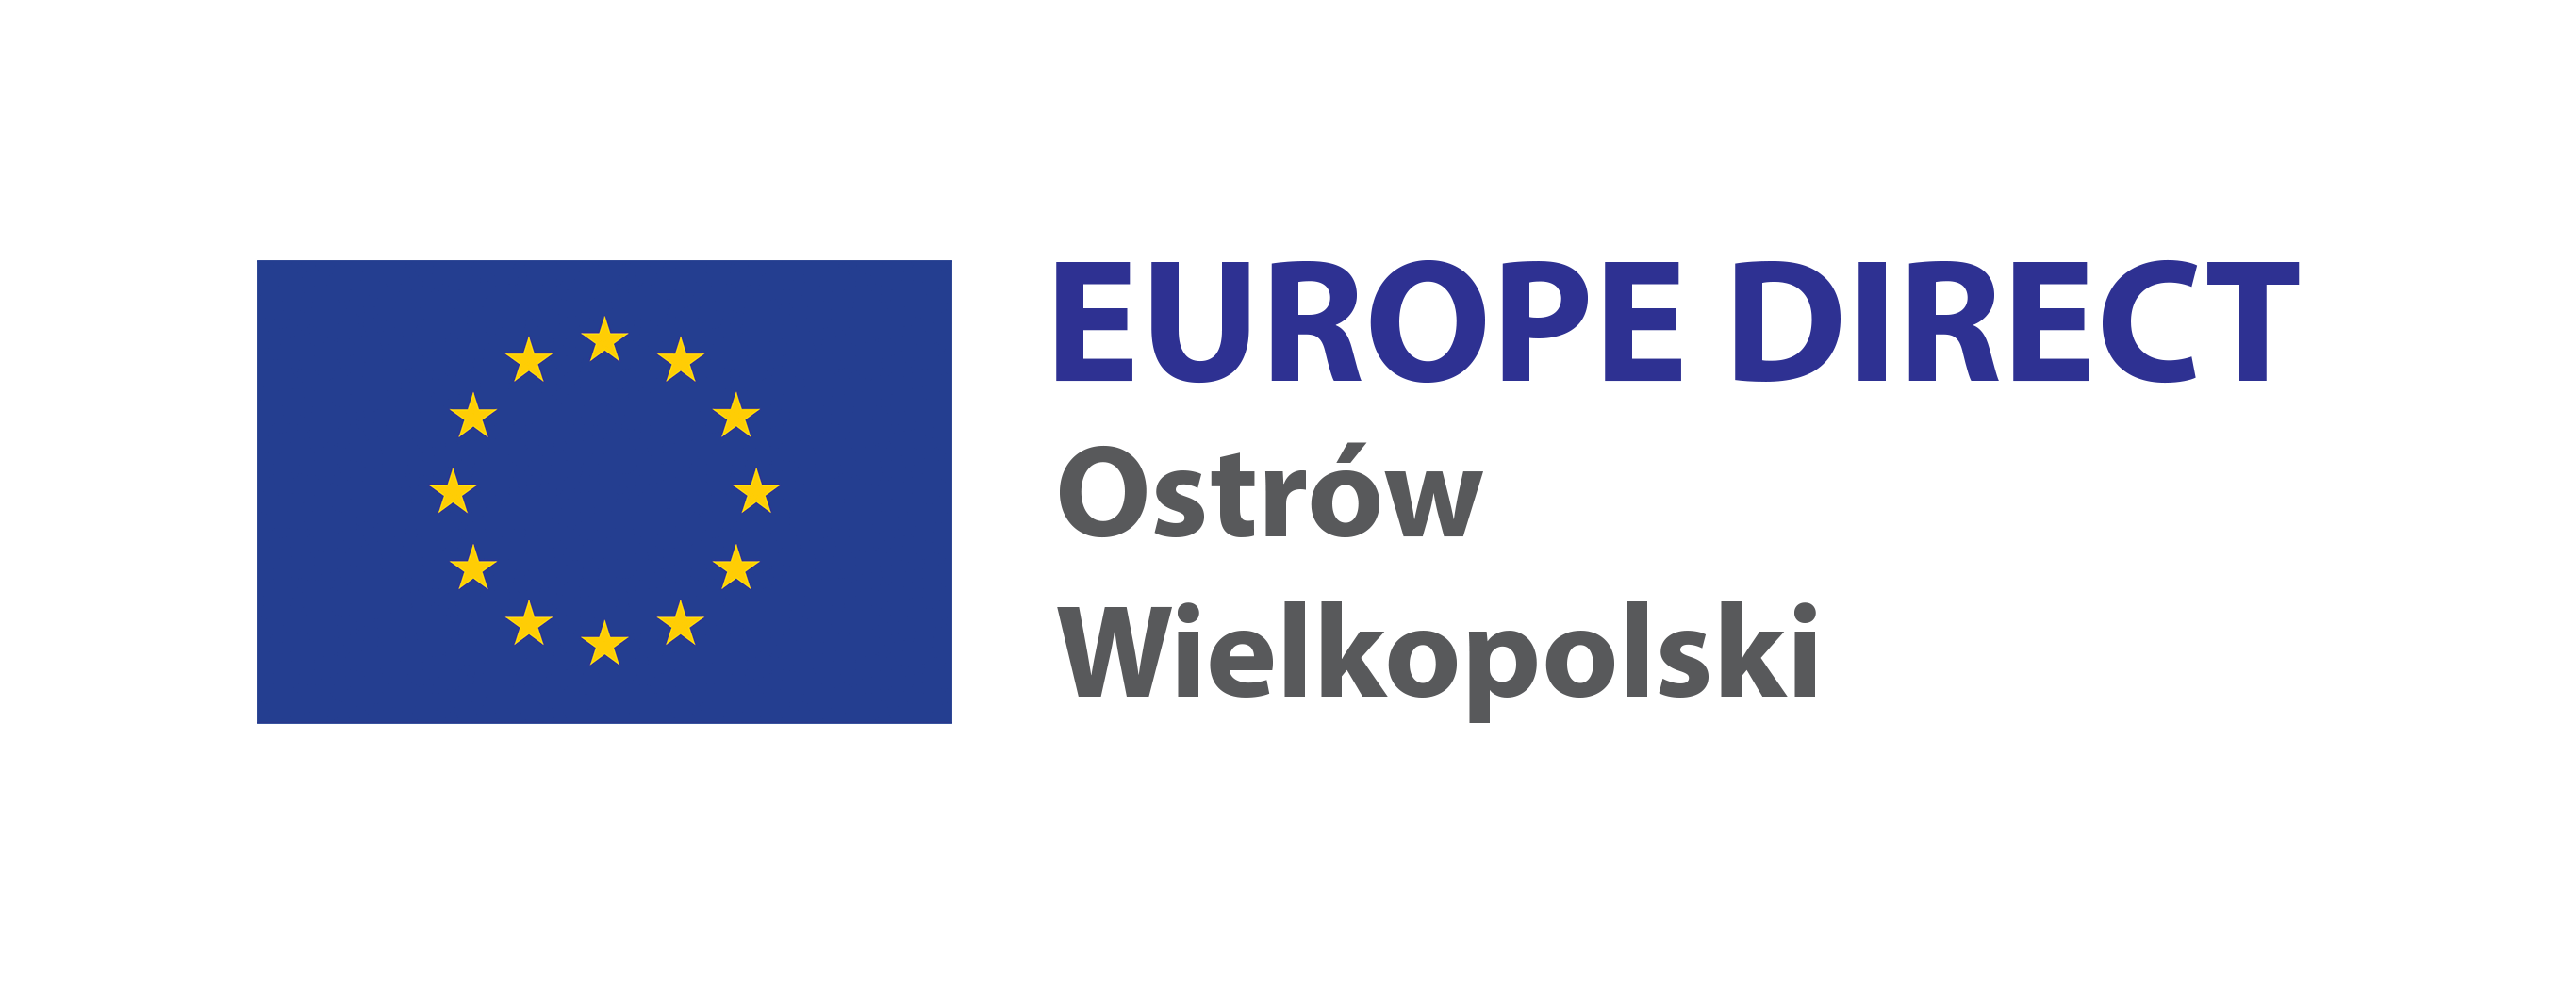 EUROPE DIRECT Ostrów Wielkopolski